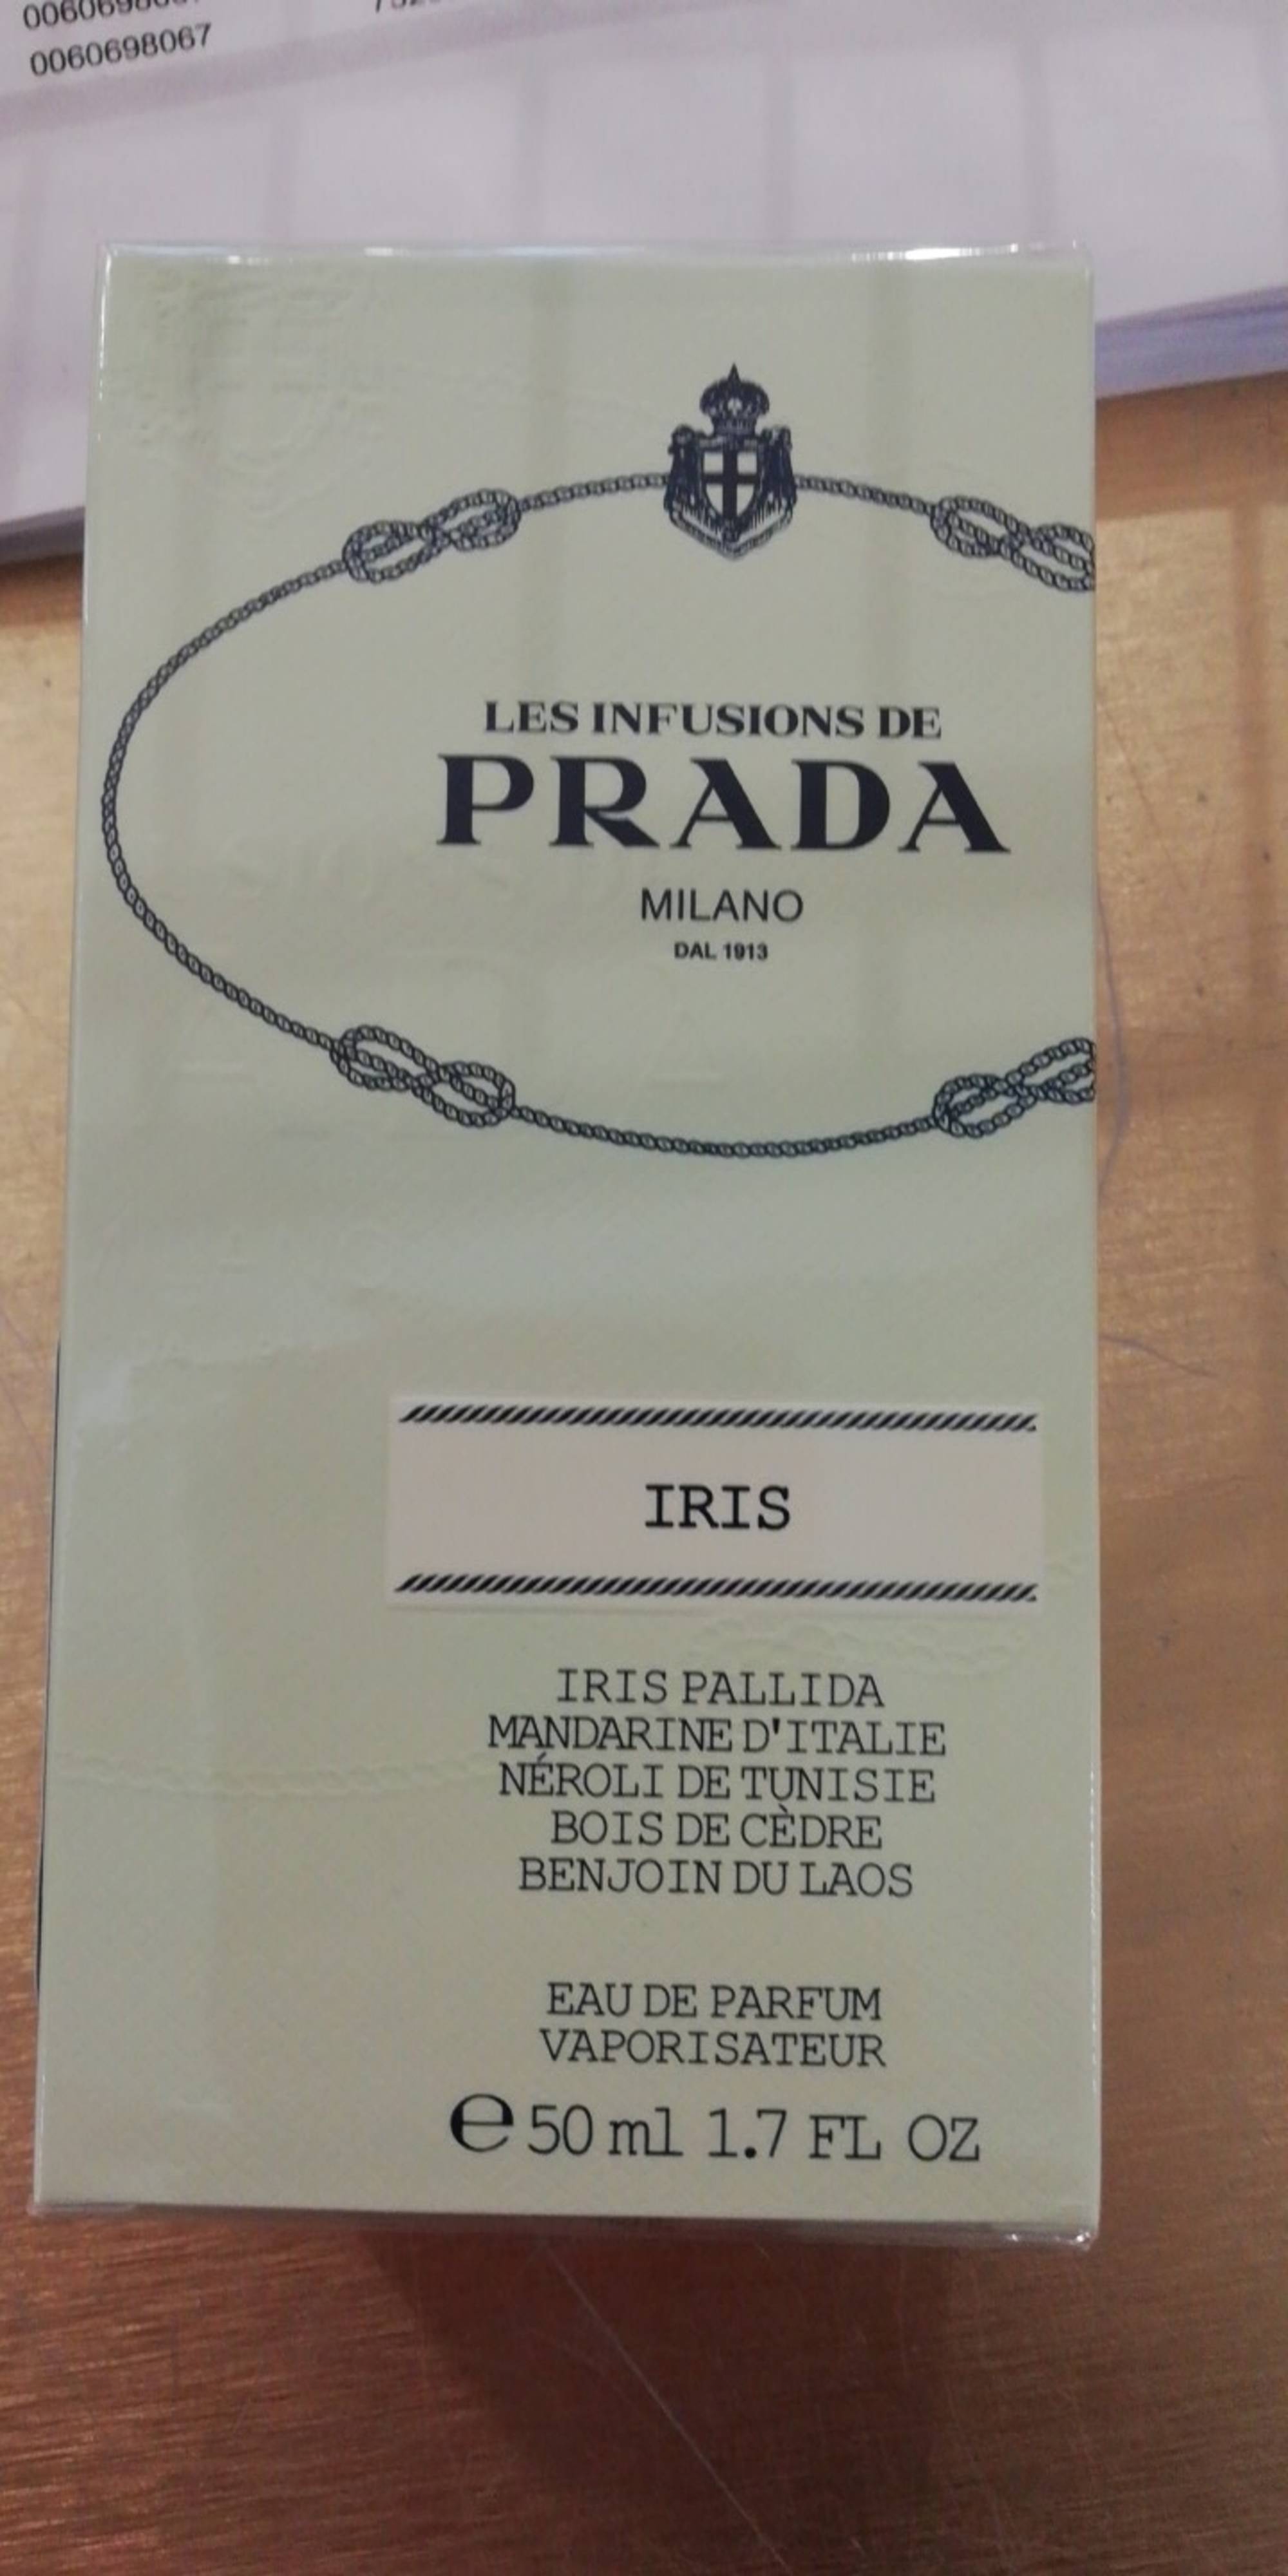 PRADA - Iris - Eau de parfum